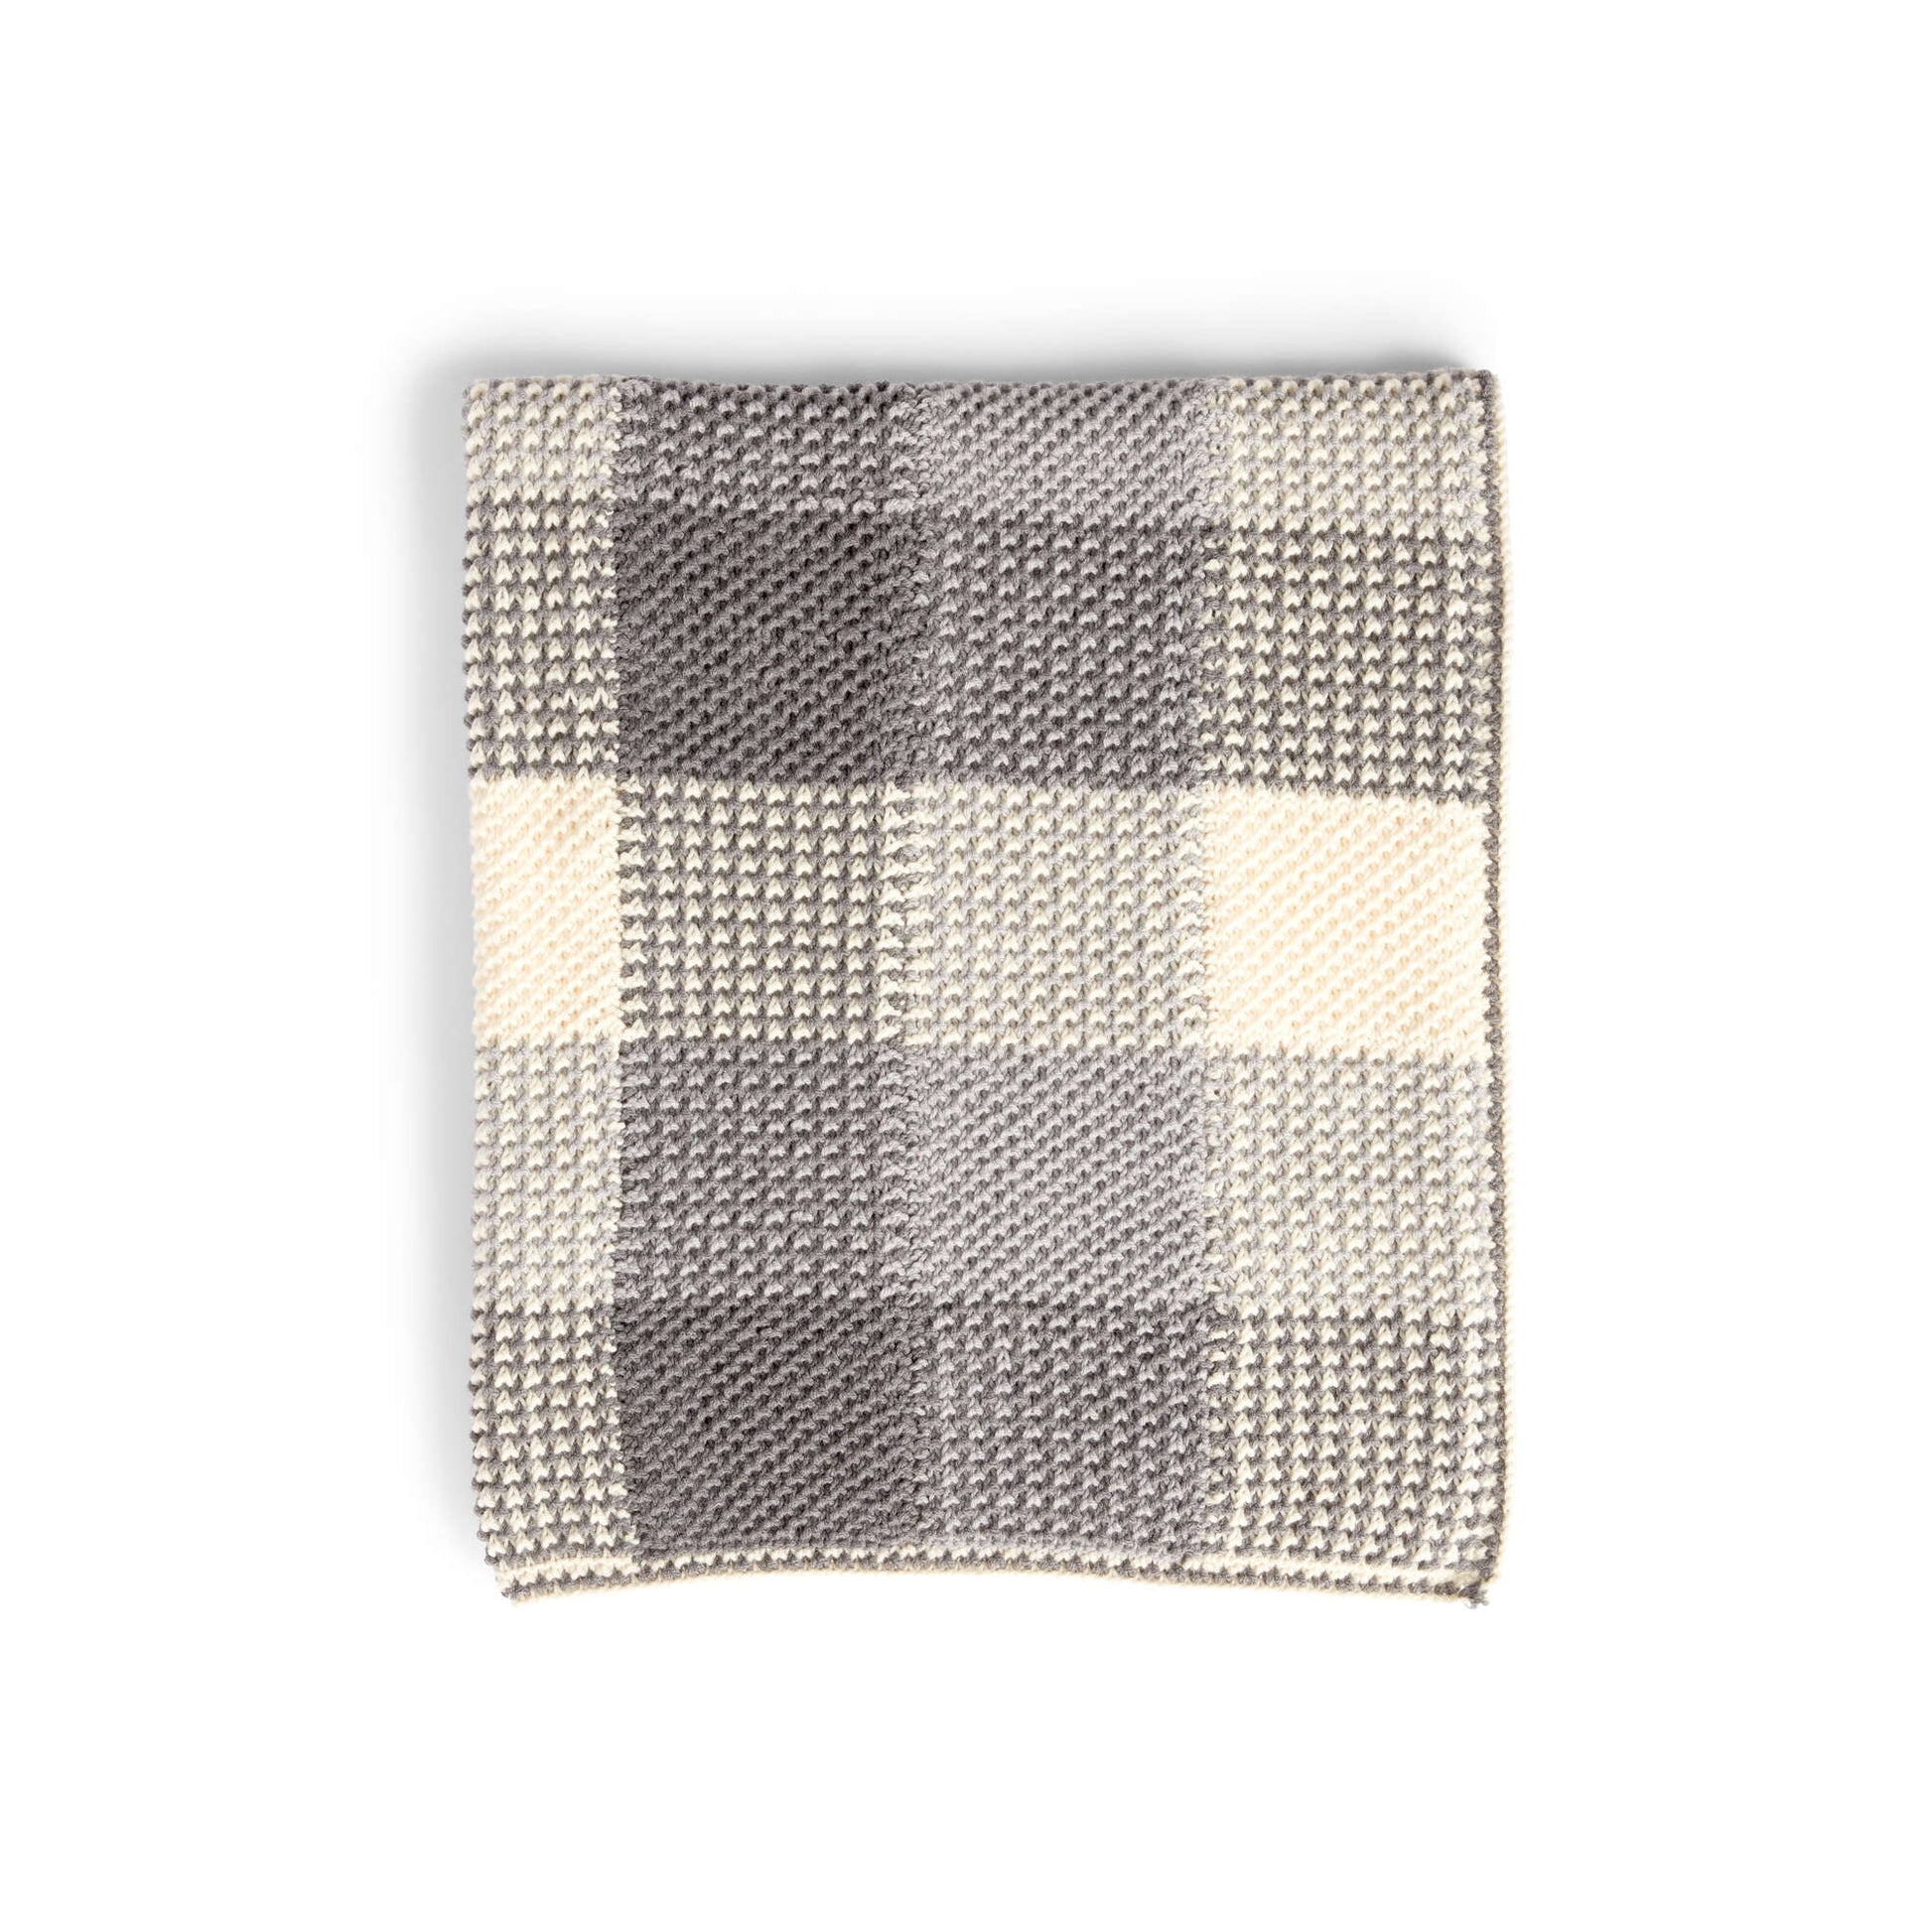 Free Caron Knit Gingham Panels Blanket Pattern